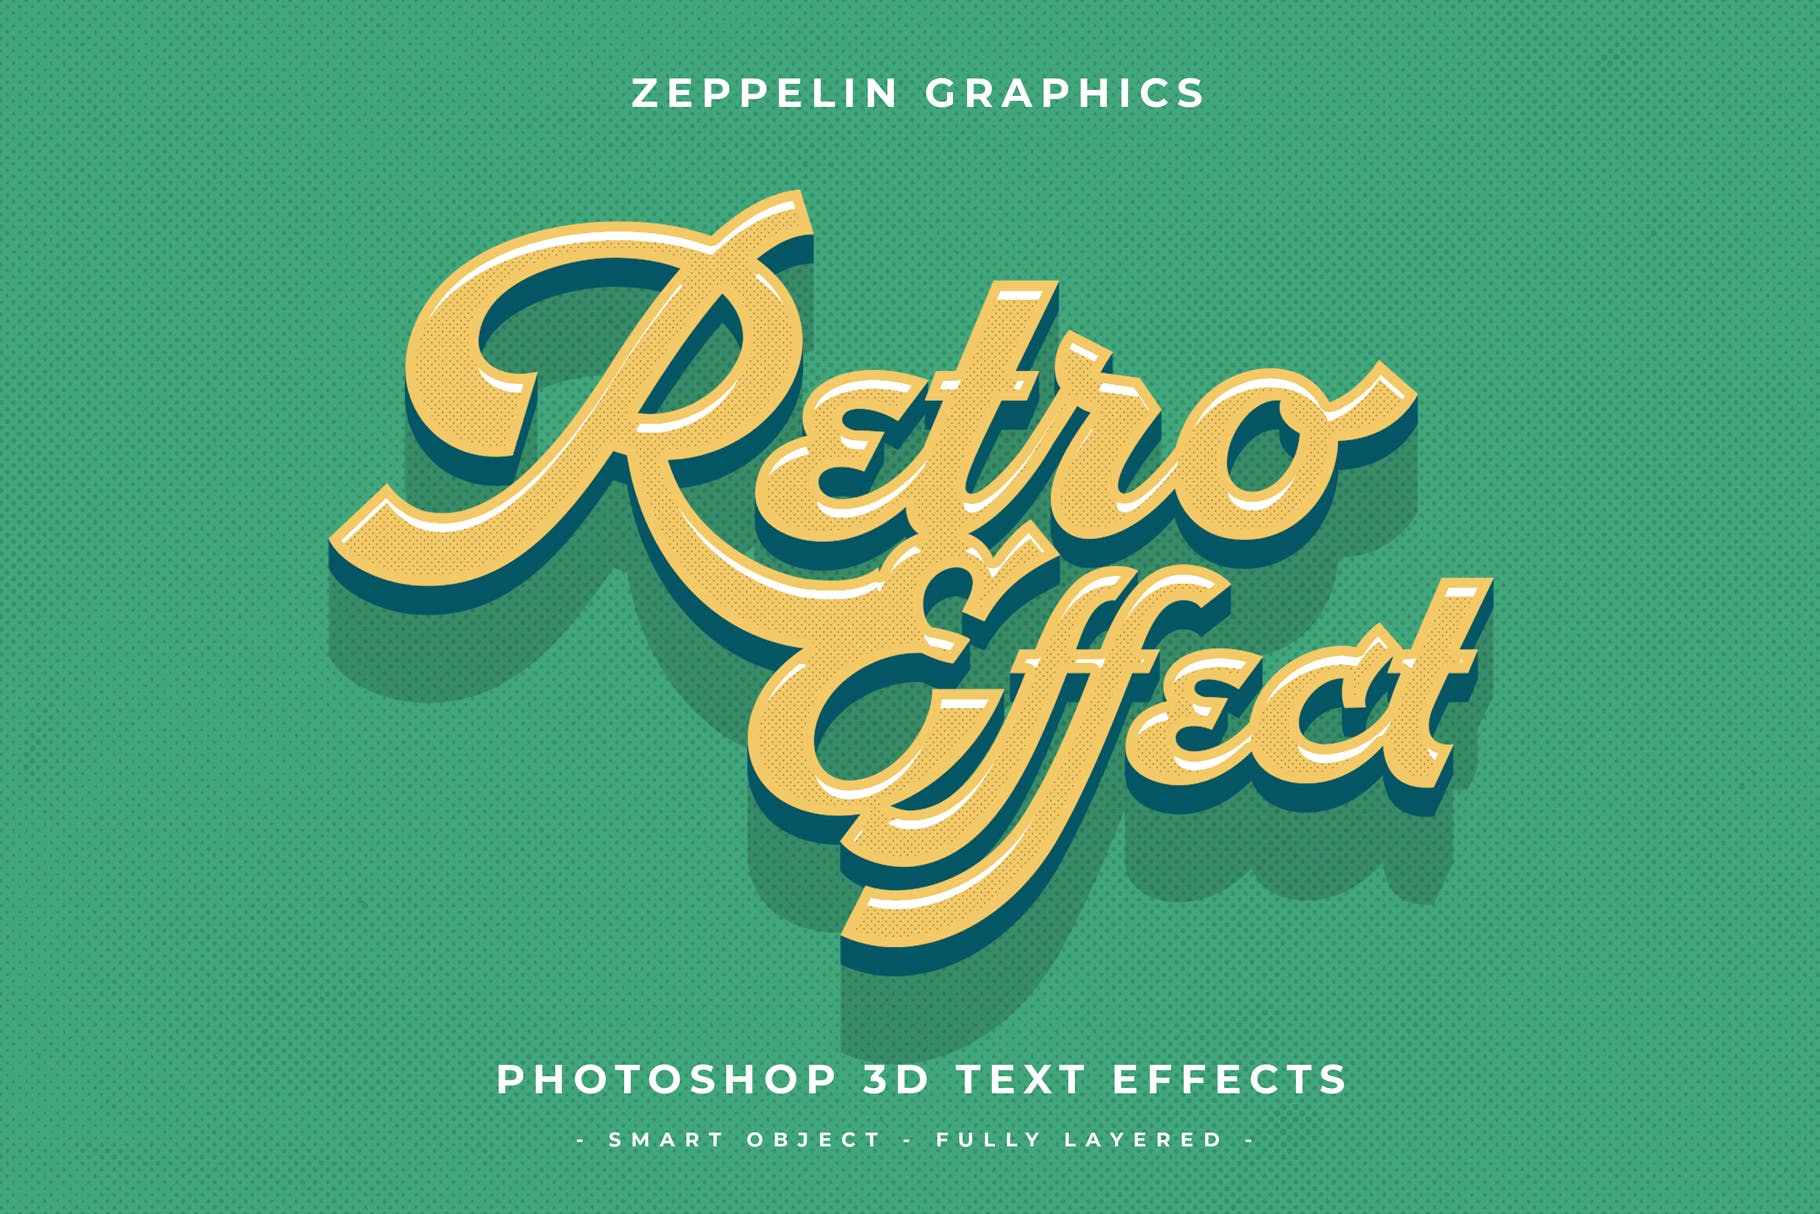 复古设计风格3D立体字体样式PSD分层模板v7 Vintage Text Effects Vol.7插图5